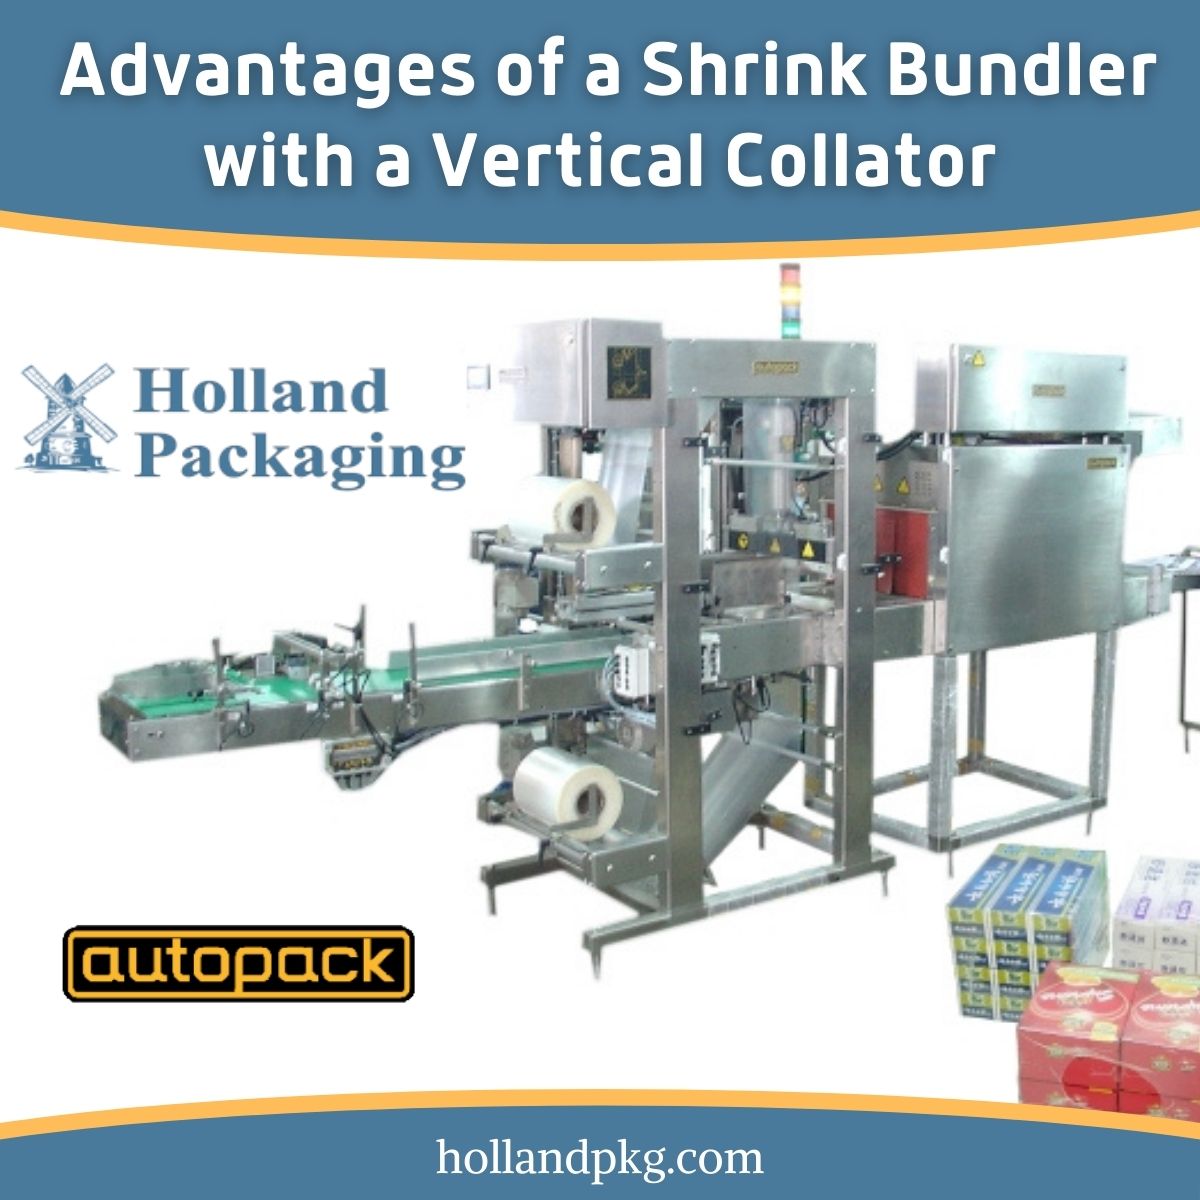 shrink bundler with vertical collator